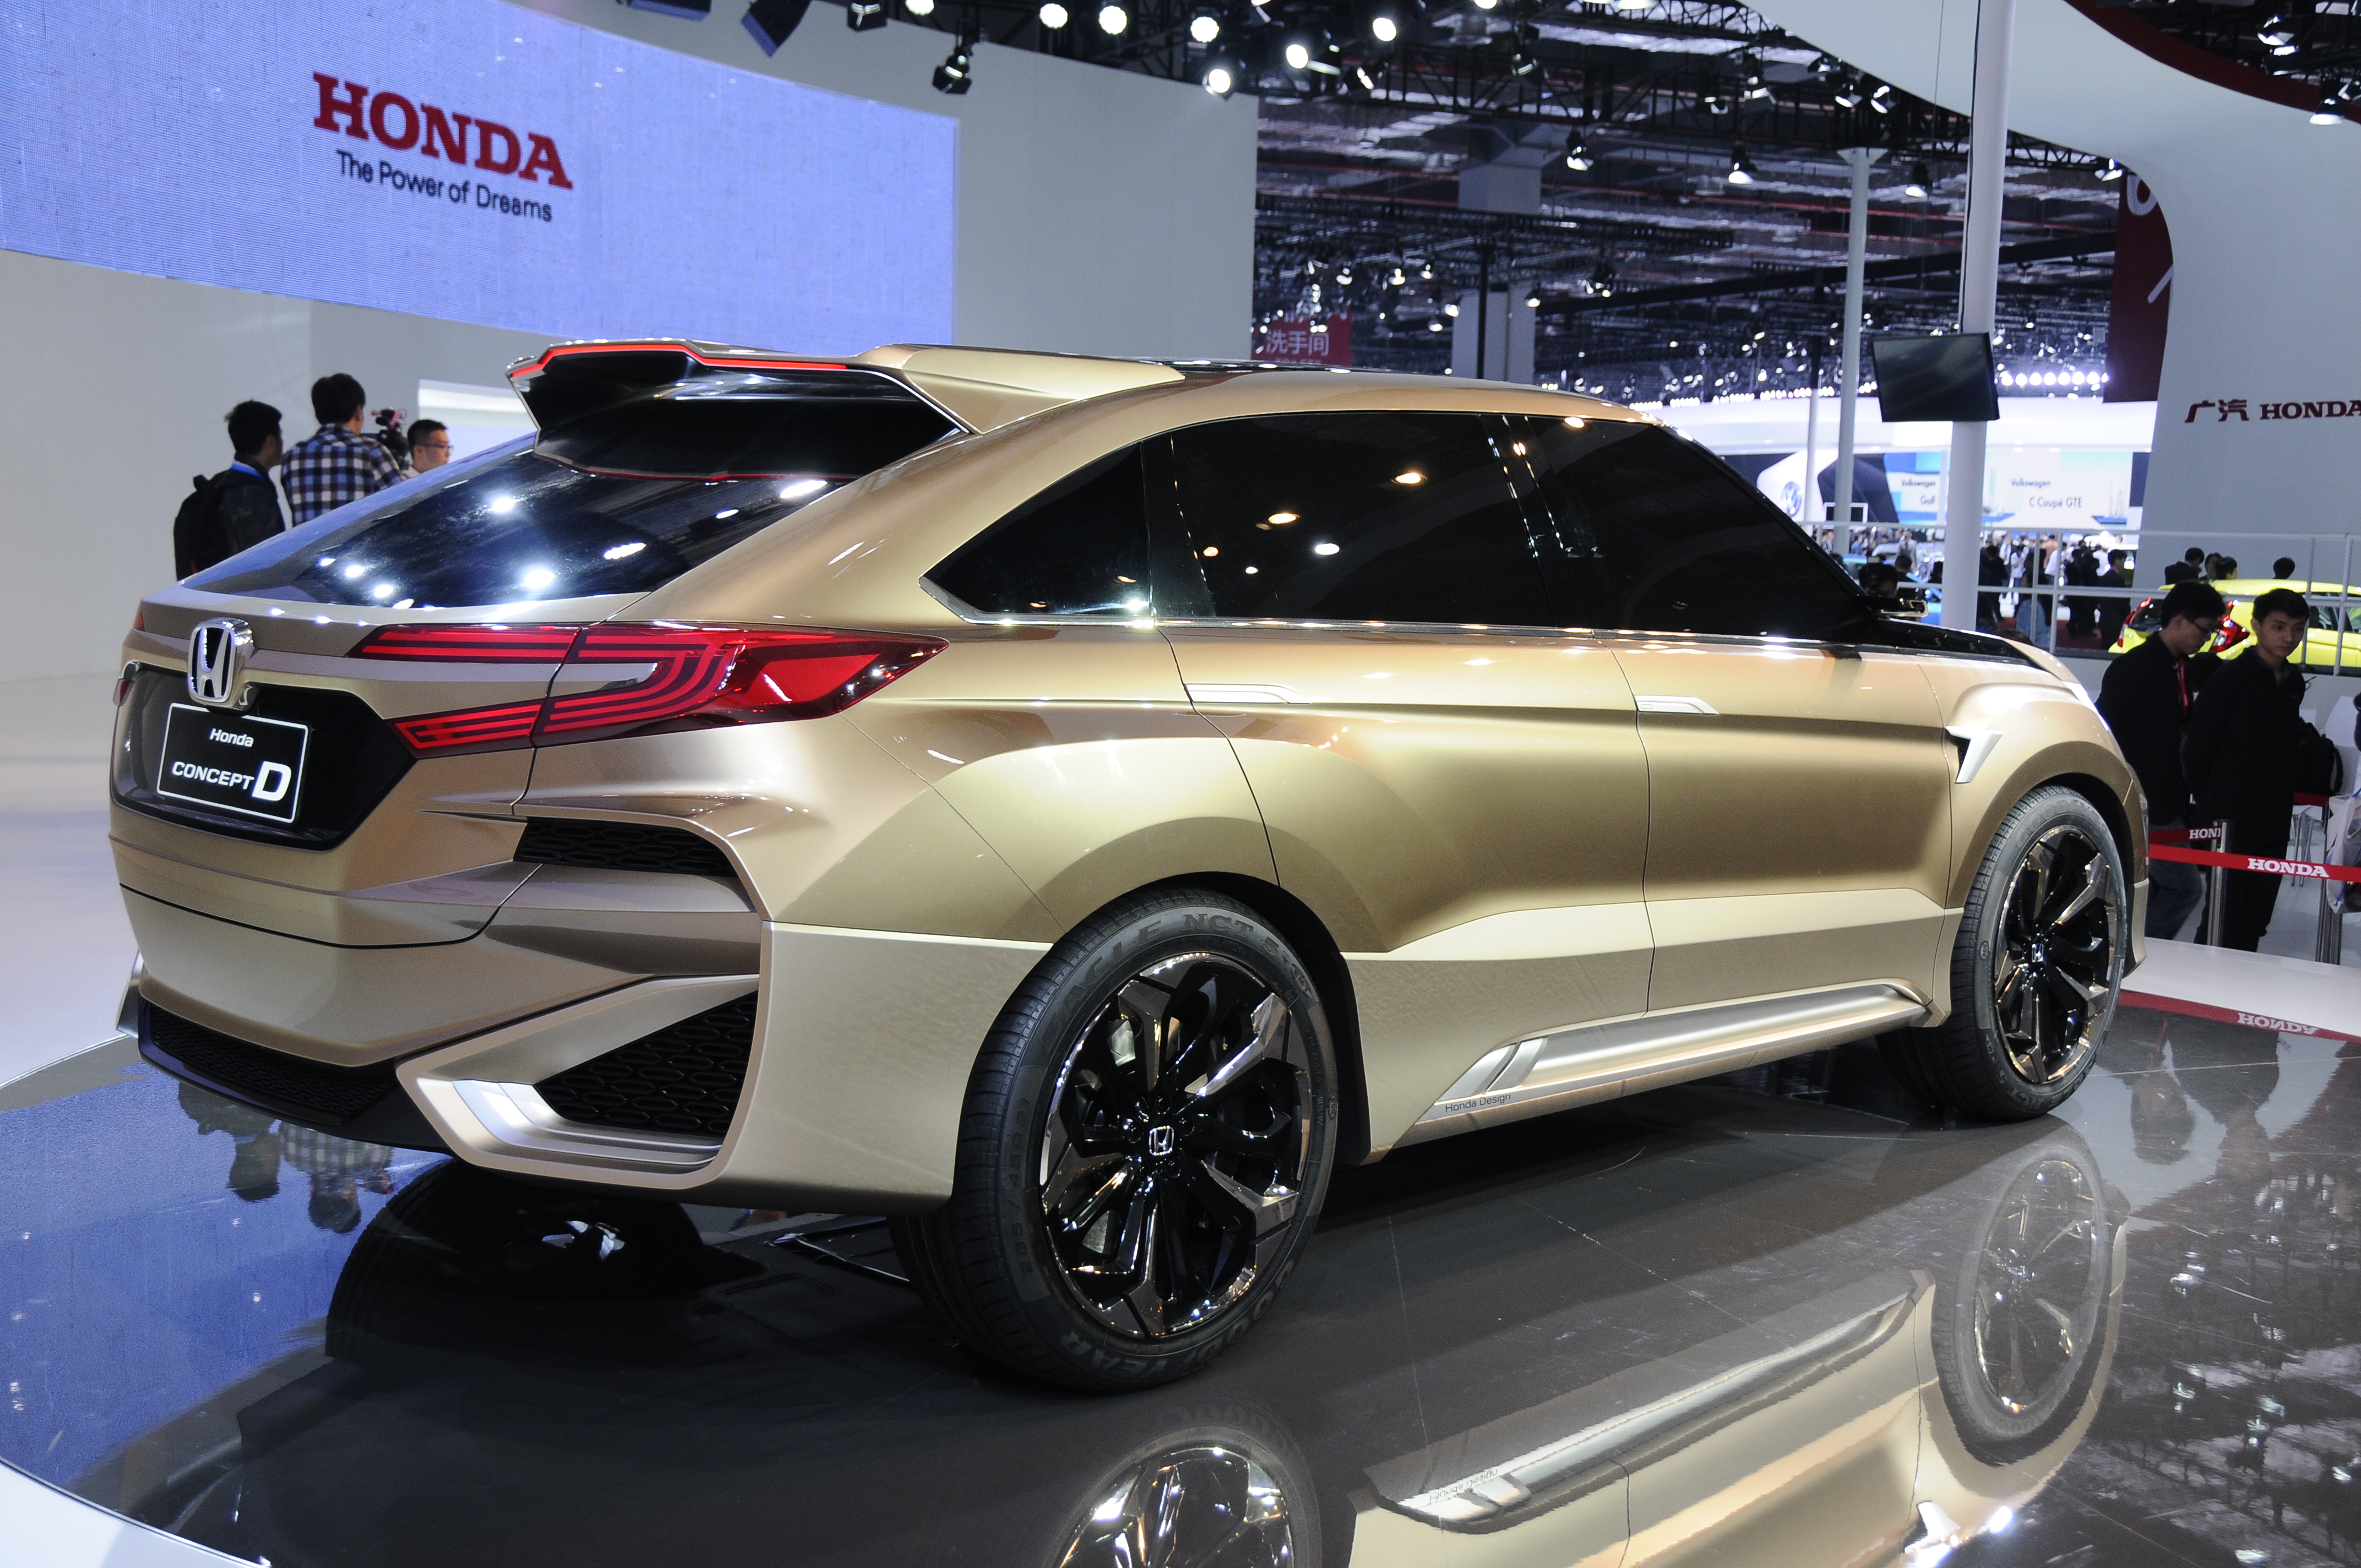 Honda Avancier SUV dilancarkan di China - 2.0T, 9AT honda ...